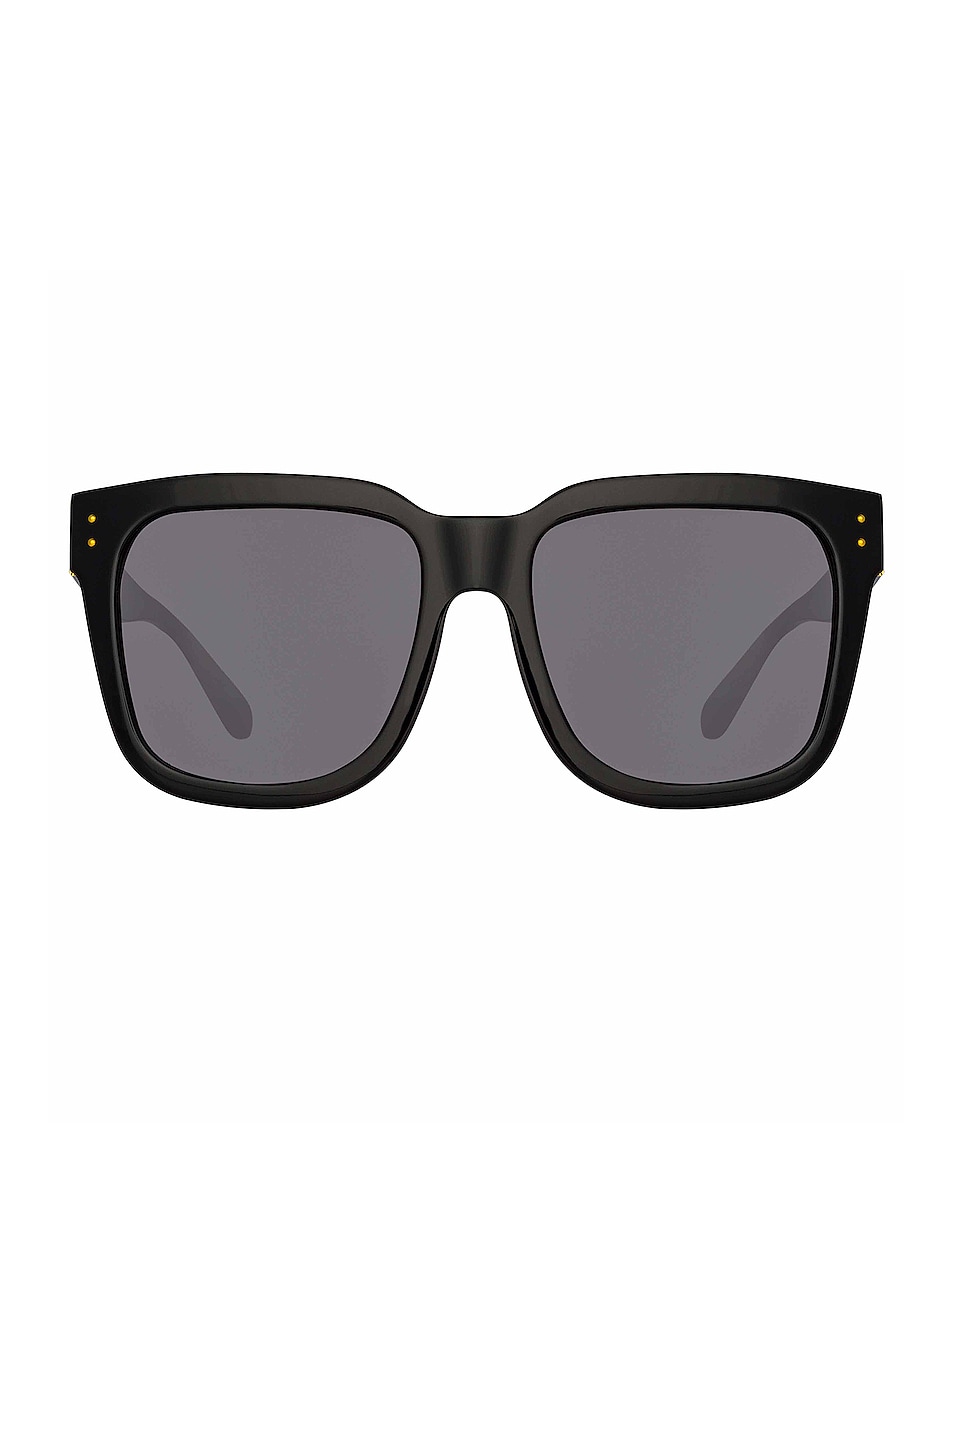 Freya Sunglasses in Black